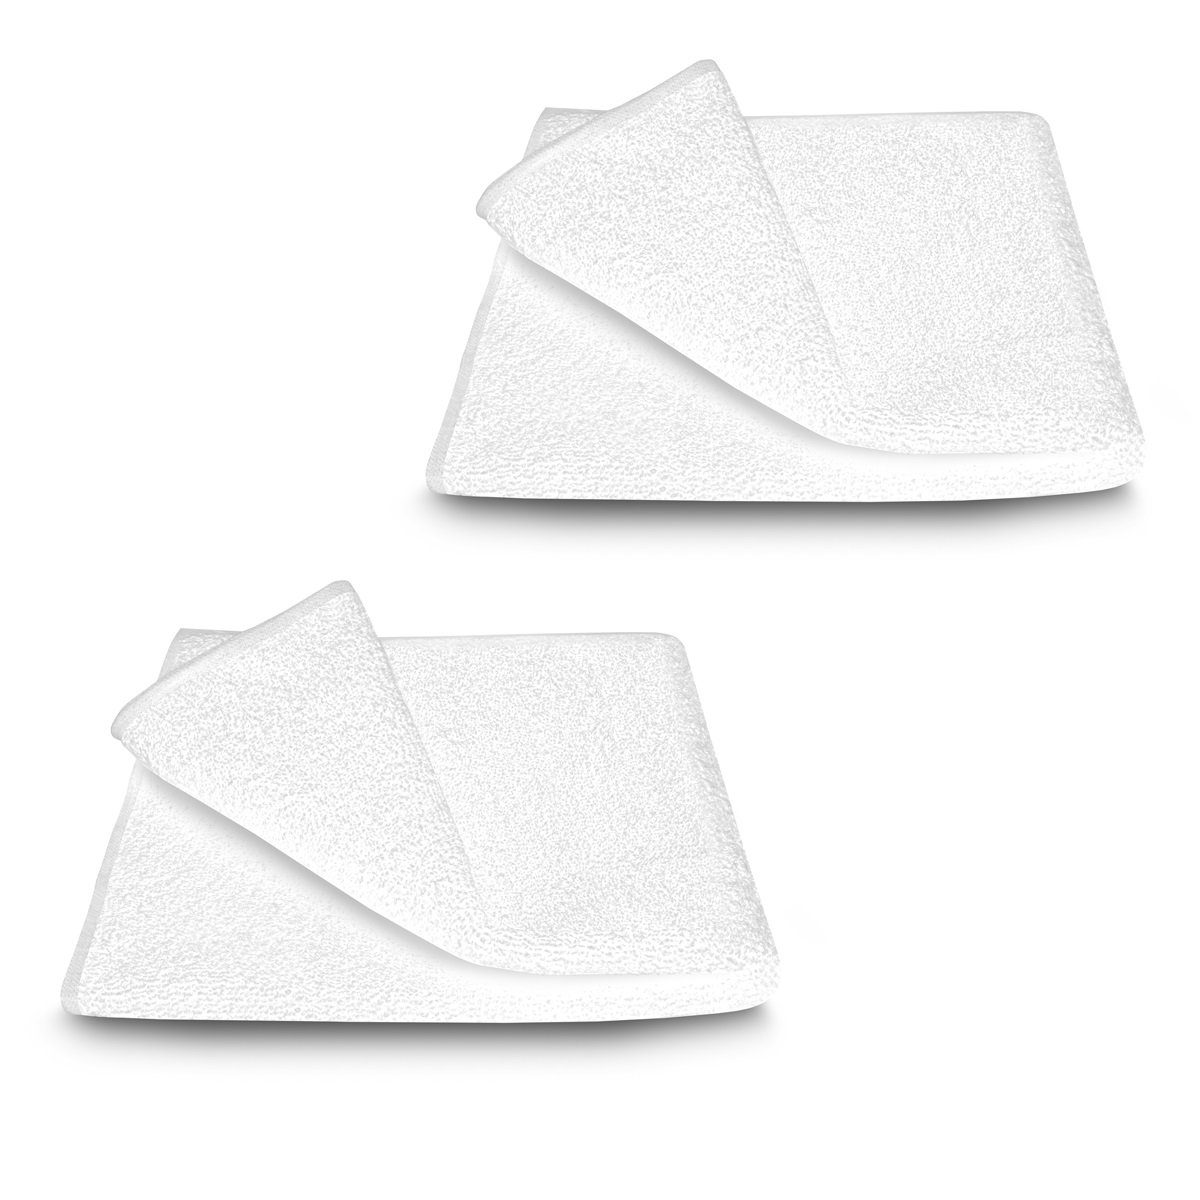 ARLI Handtuch Set Handtuch 100% Baumwolle Handtücher Set Serie aus hochwertigem Rohstoff Frottier klassischer Design elegant schlicht modern praktisch mit Handtuchaufhänger, Baumwolle, (2-tlg) Weiß